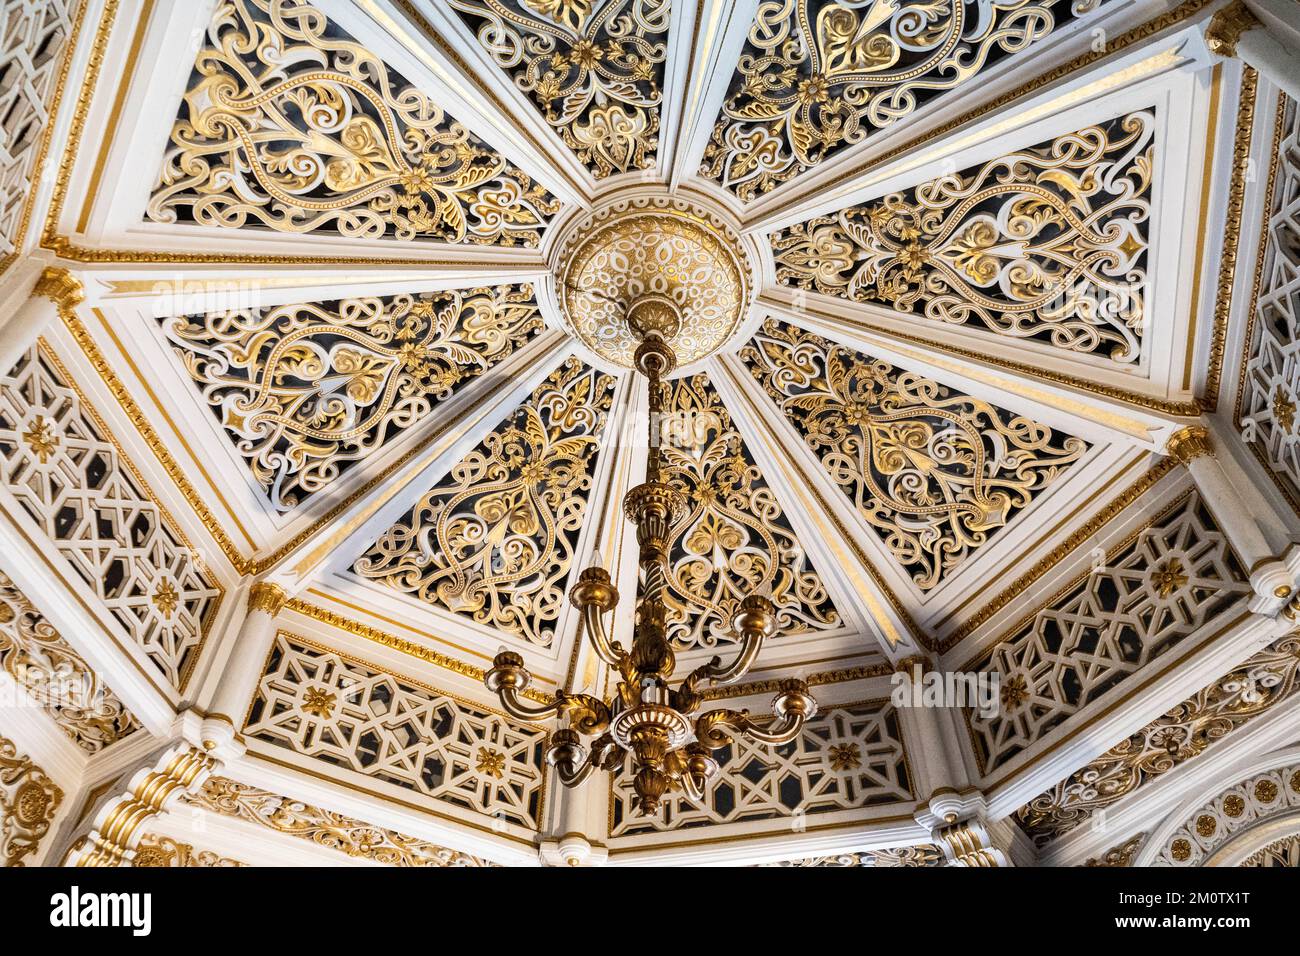 Goldenes achteckiges Zimmer, Innere des Schlosses Sammezzano, vom Aussterben bedrohter Palast aus dem 19.. Jahrhundert im maurischen Stil, Reggello, Provinz Florenz, Italien Stockfoto